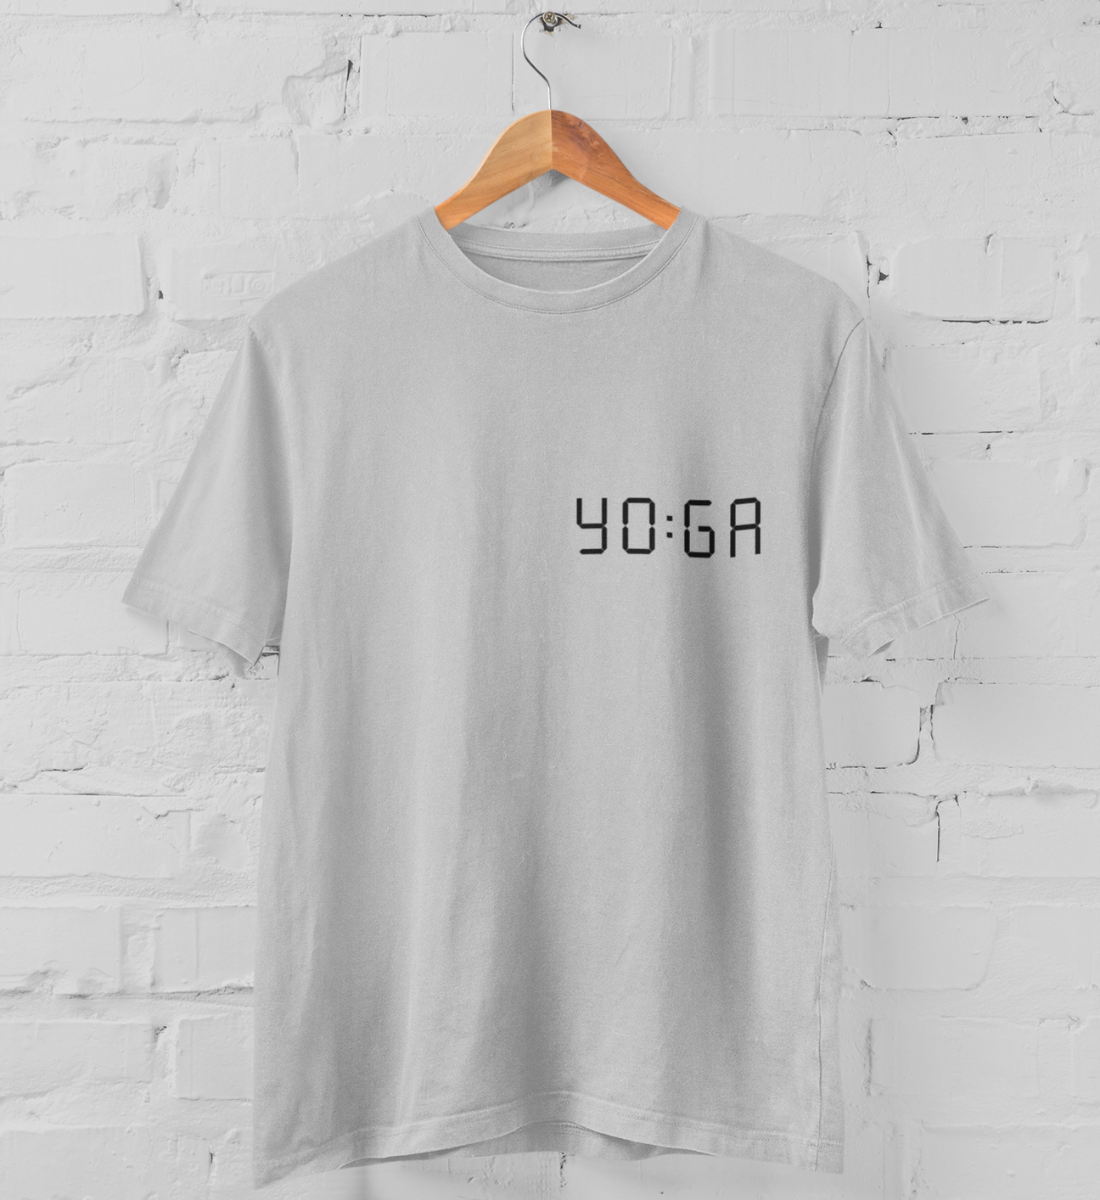 zeit für yoga l yoga t-shirt hellgrau l yoga oberteil l schöne yoga kleidung l nachhaltig und umweltfreundliche produkte online shoppen